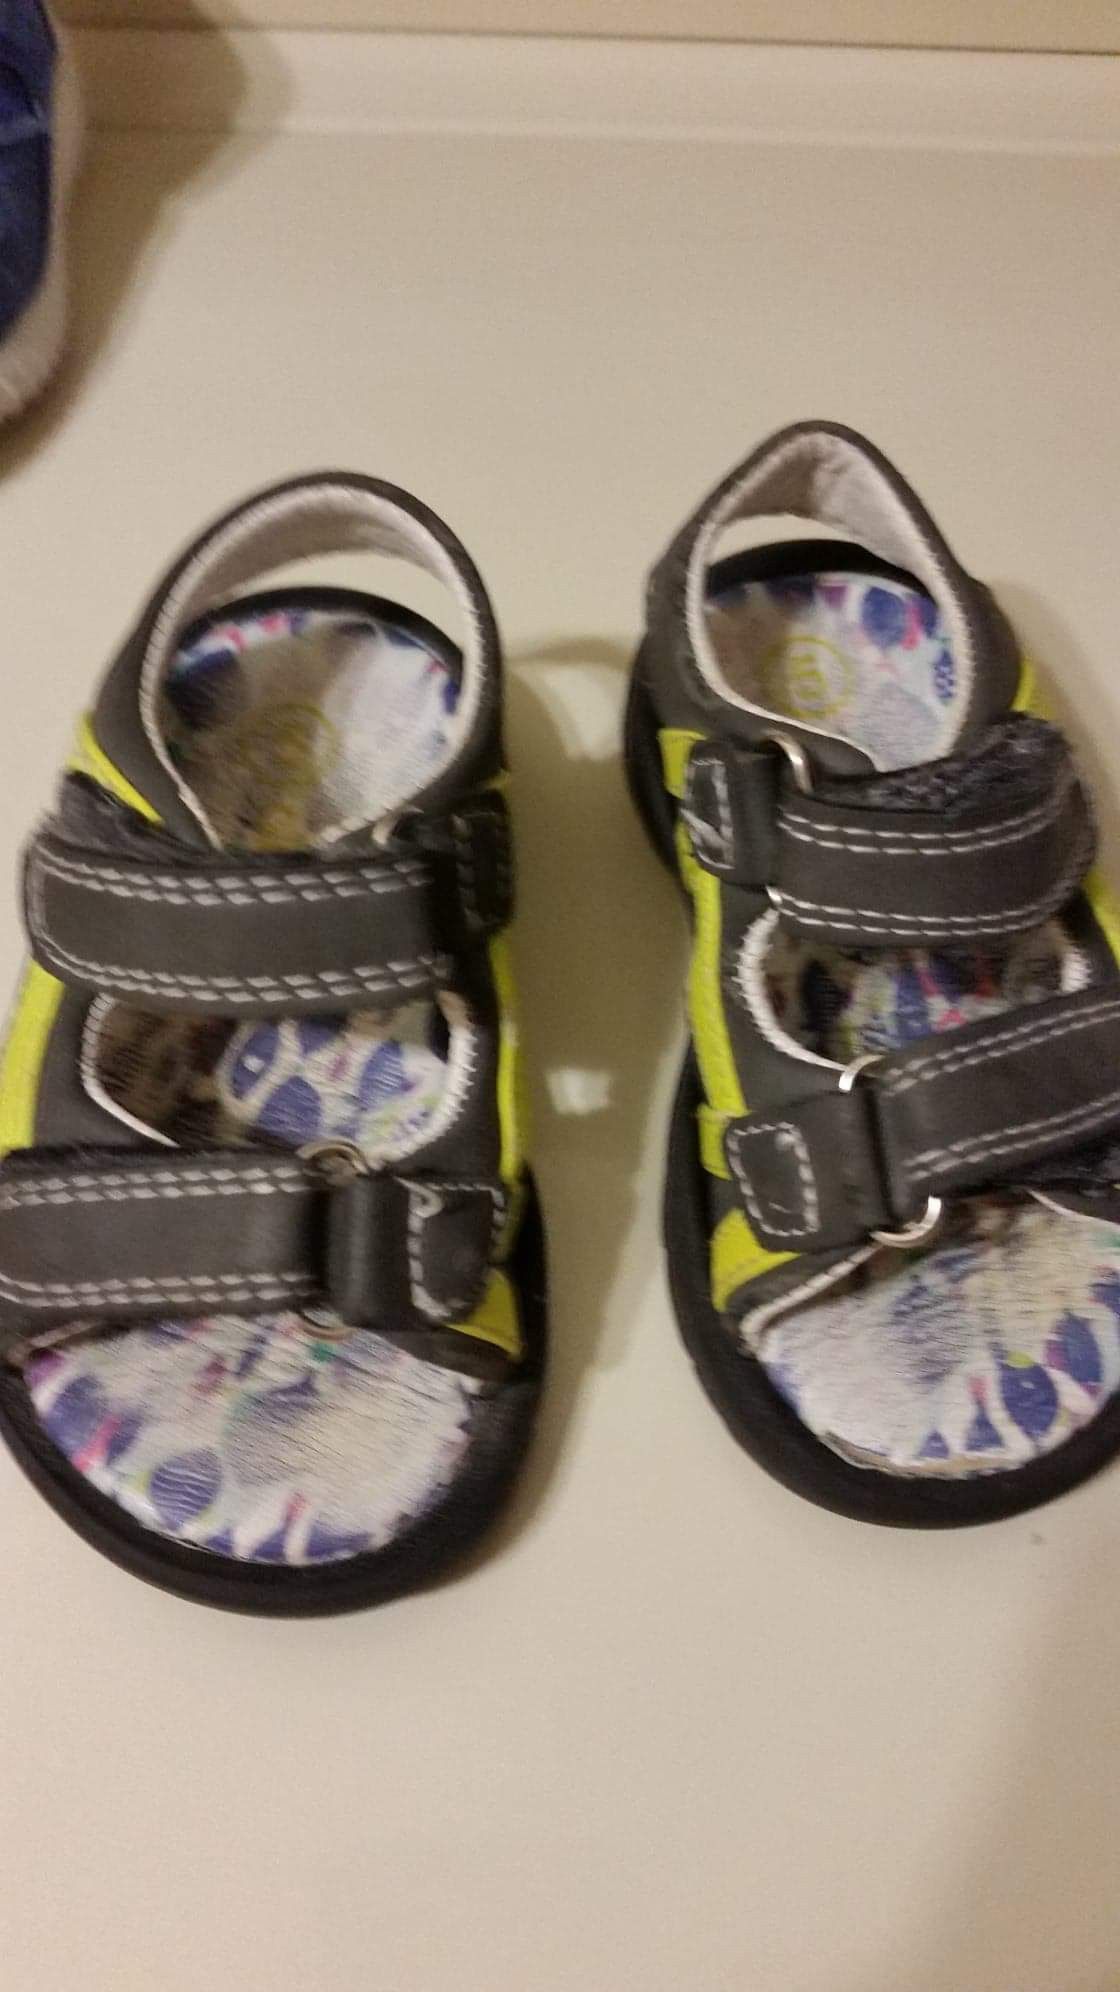 Target toddler sandals size 5